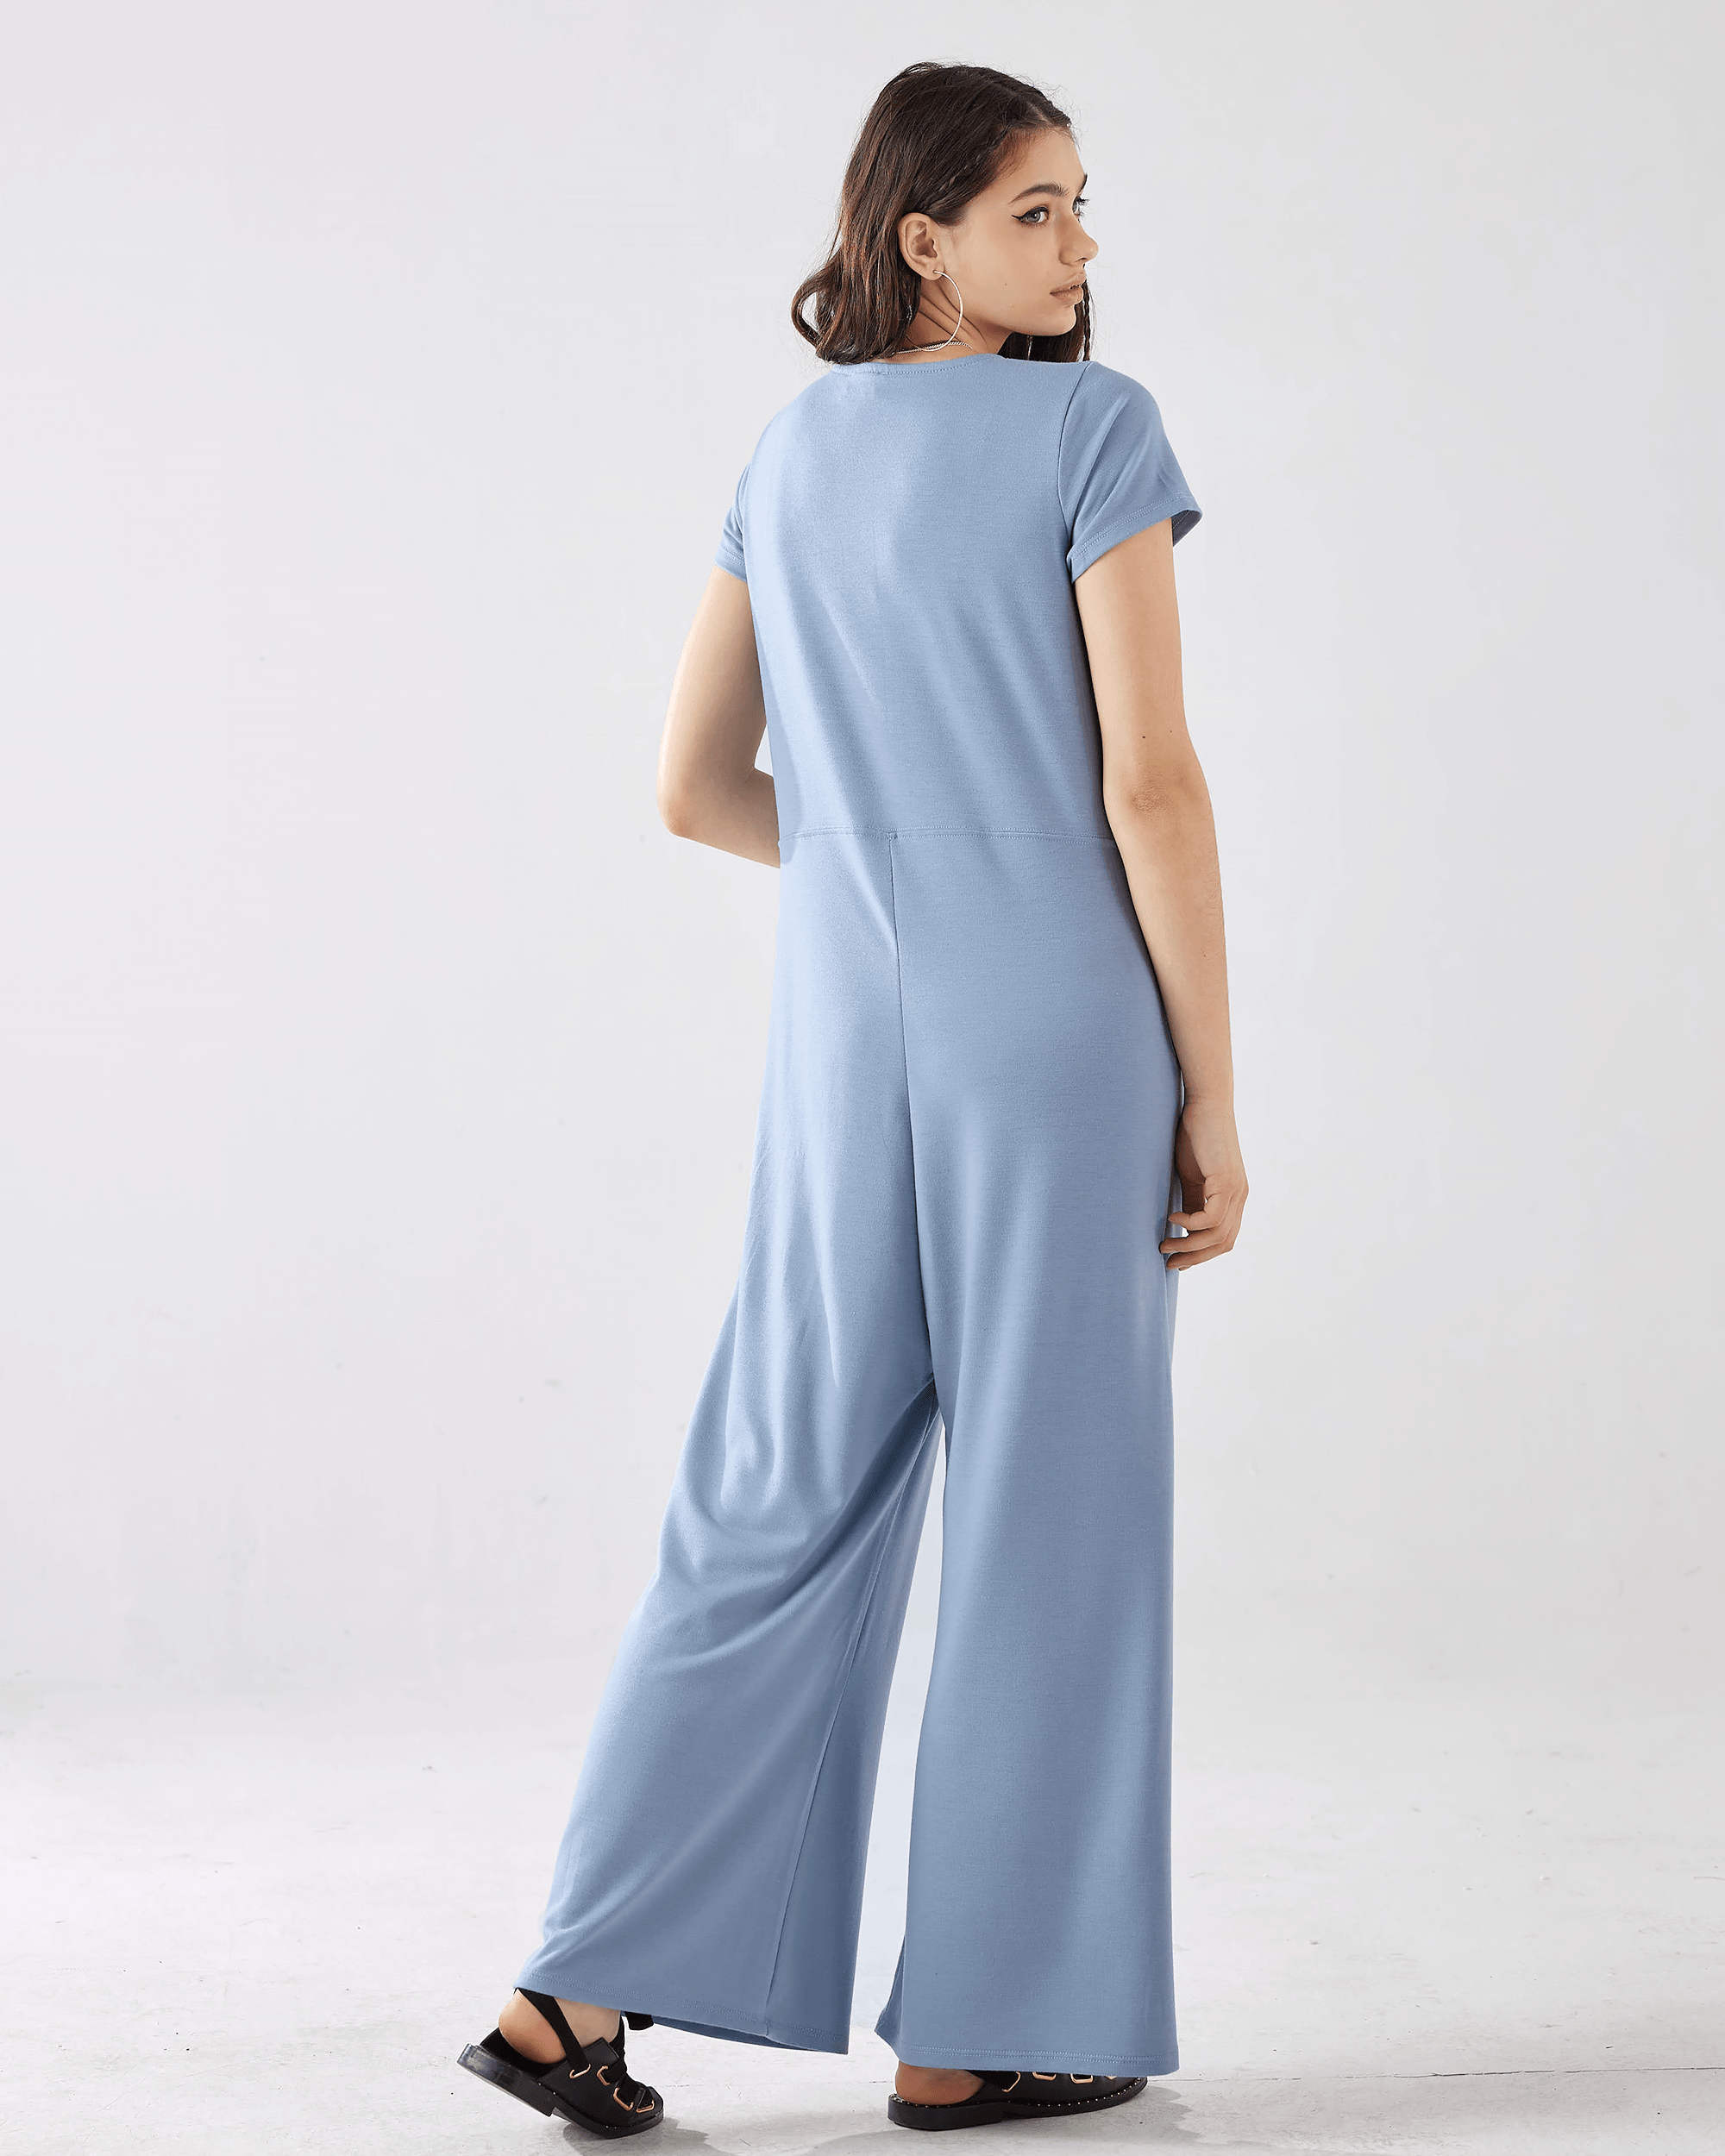 Dream Blue Jumpsuit: Button-Up Elegance